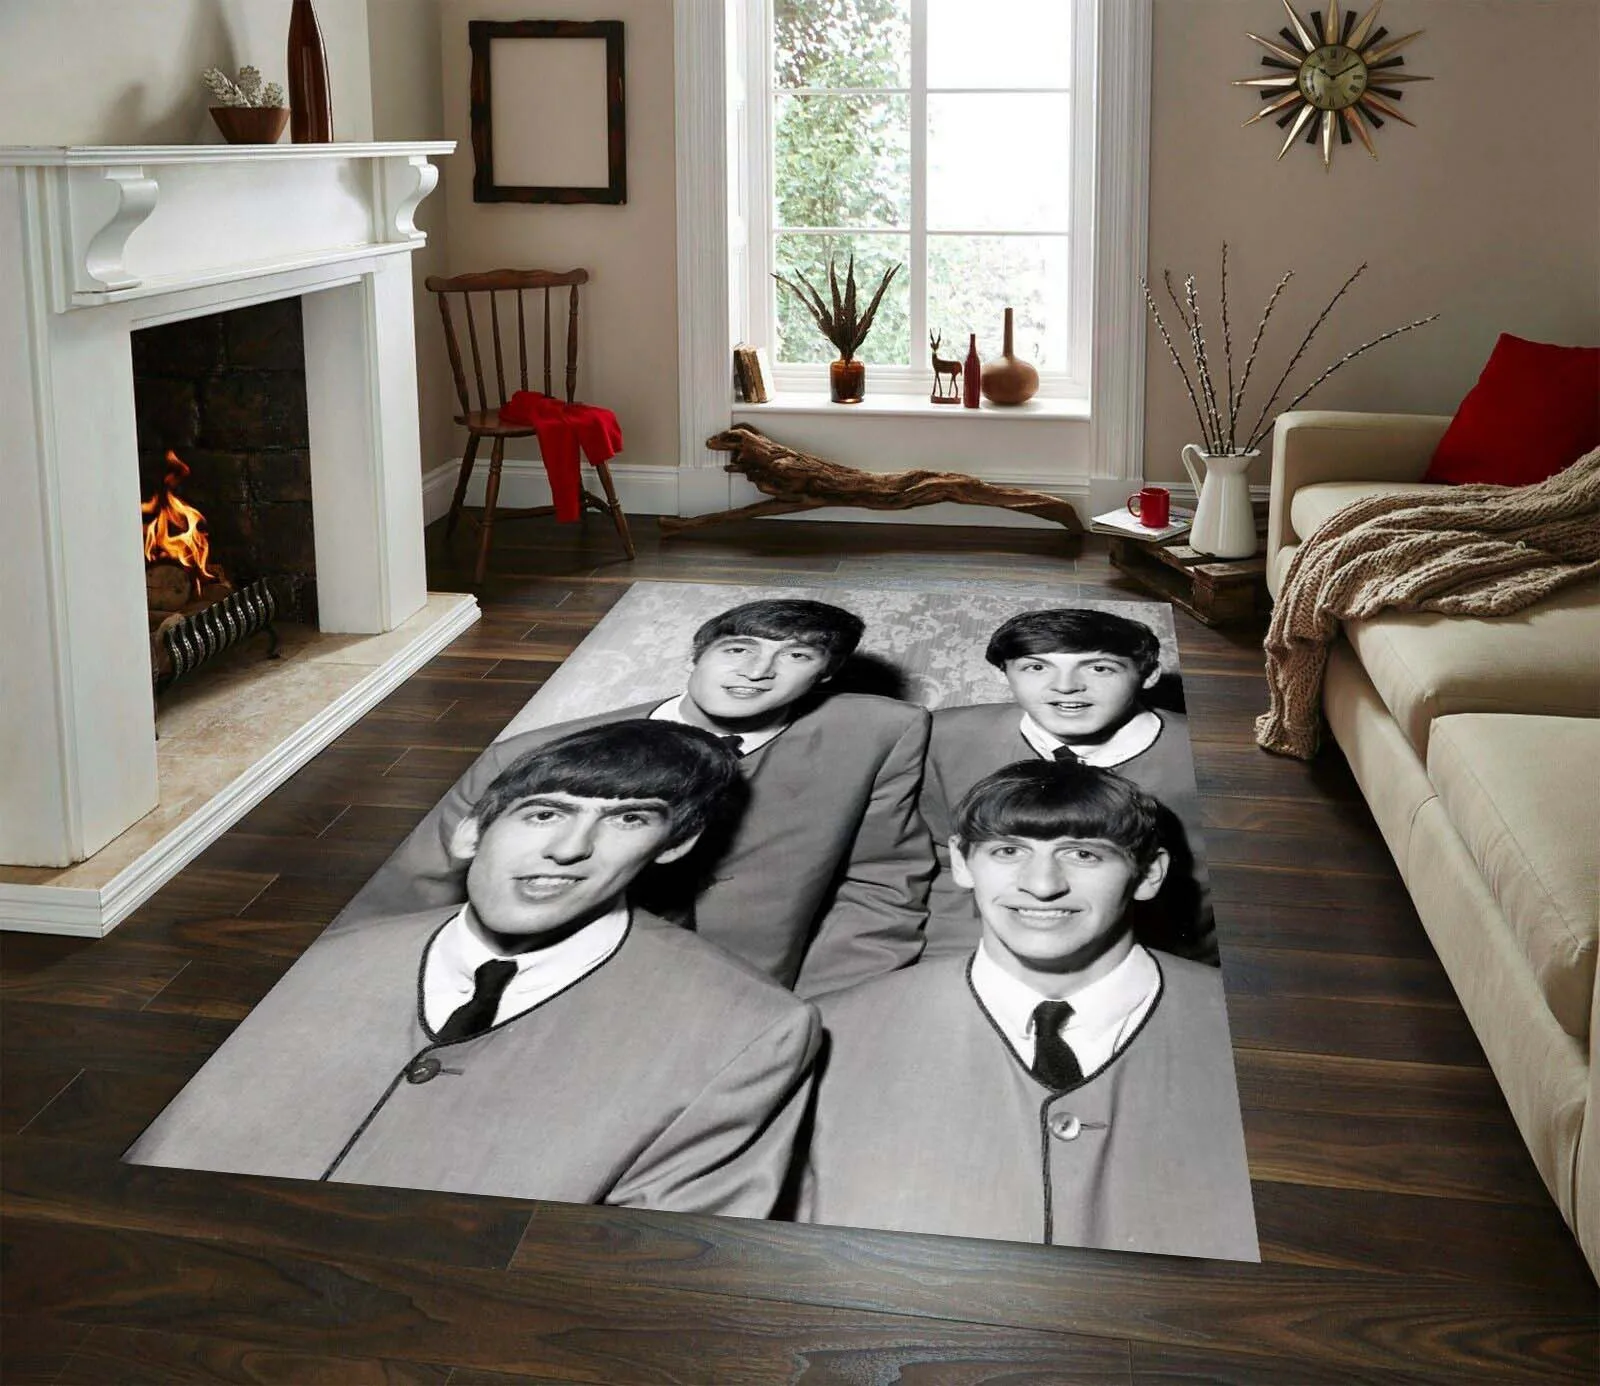 Beatles Rug, Modern Rug, Legends Carpet, Living Room Rug, Home Decor Carpets, Decor For Boy Room, Trends Rug